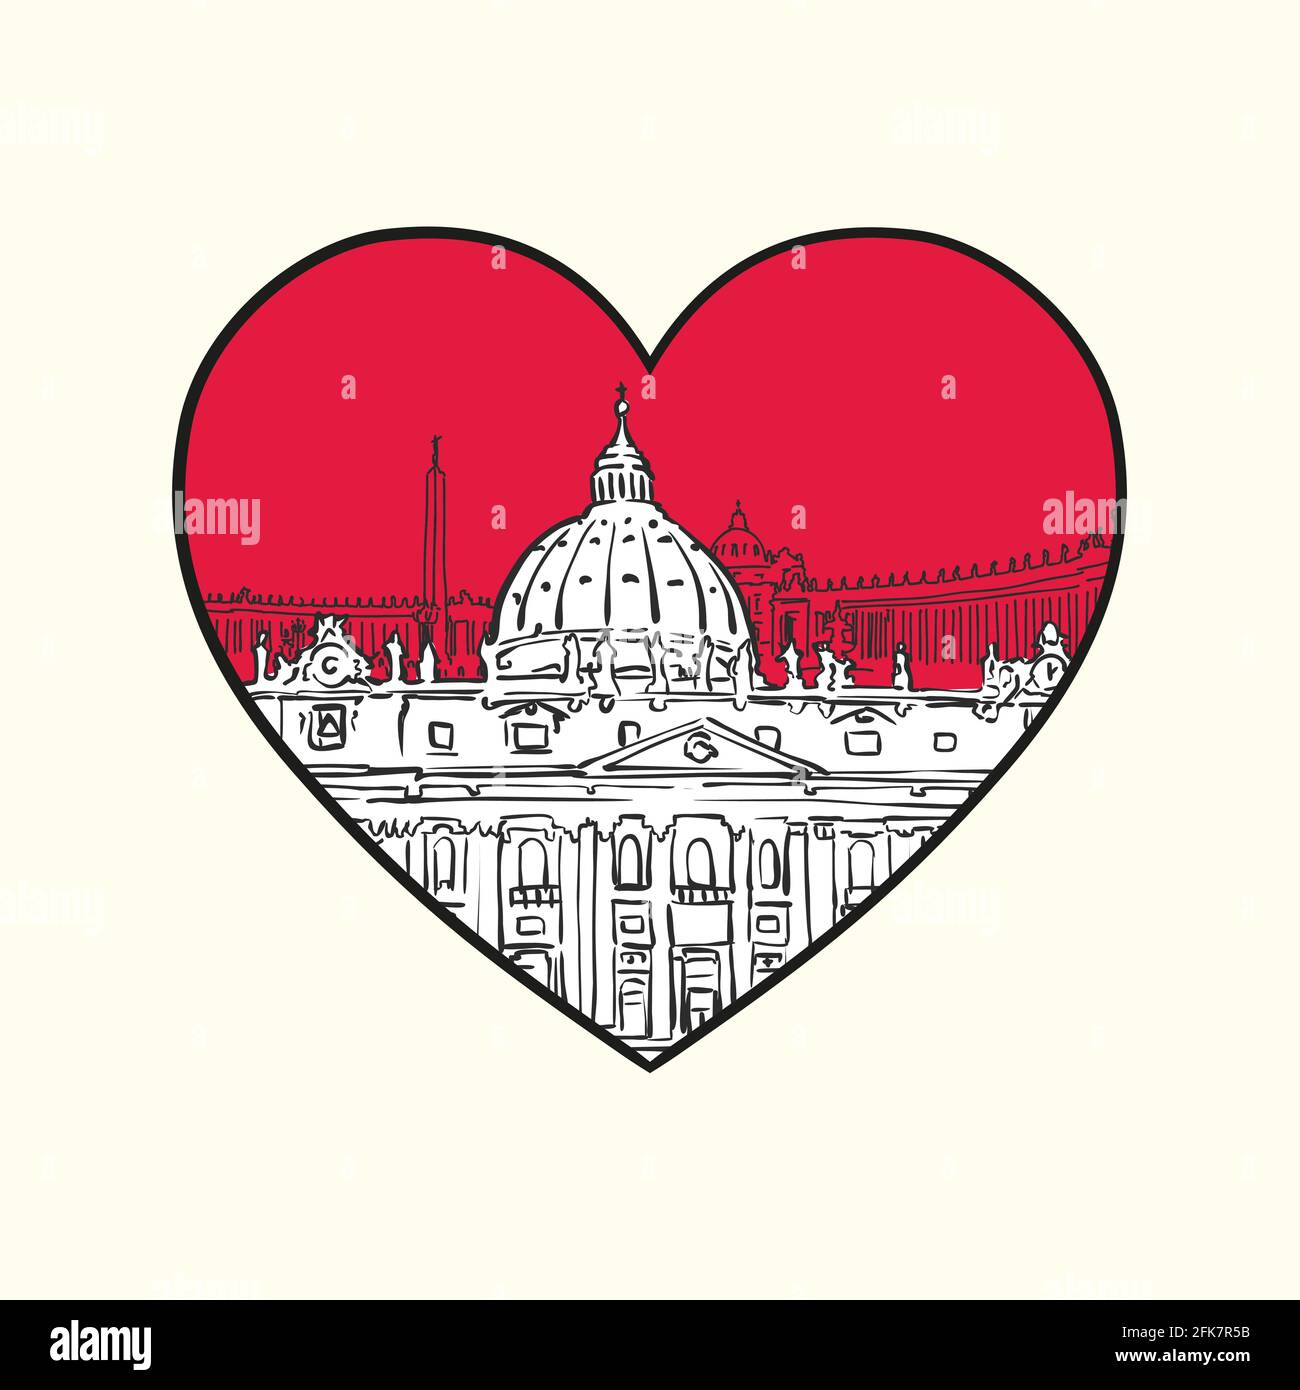 Ich liebe den Vatikan. Rotes Herz und berühmte Gebäude, Komposition des Heiligen Stuhls. Handgezeichnete schwarz-weiße Vektorgrafik. Gruppierte und bewegliche Objekte. Stock Vektor